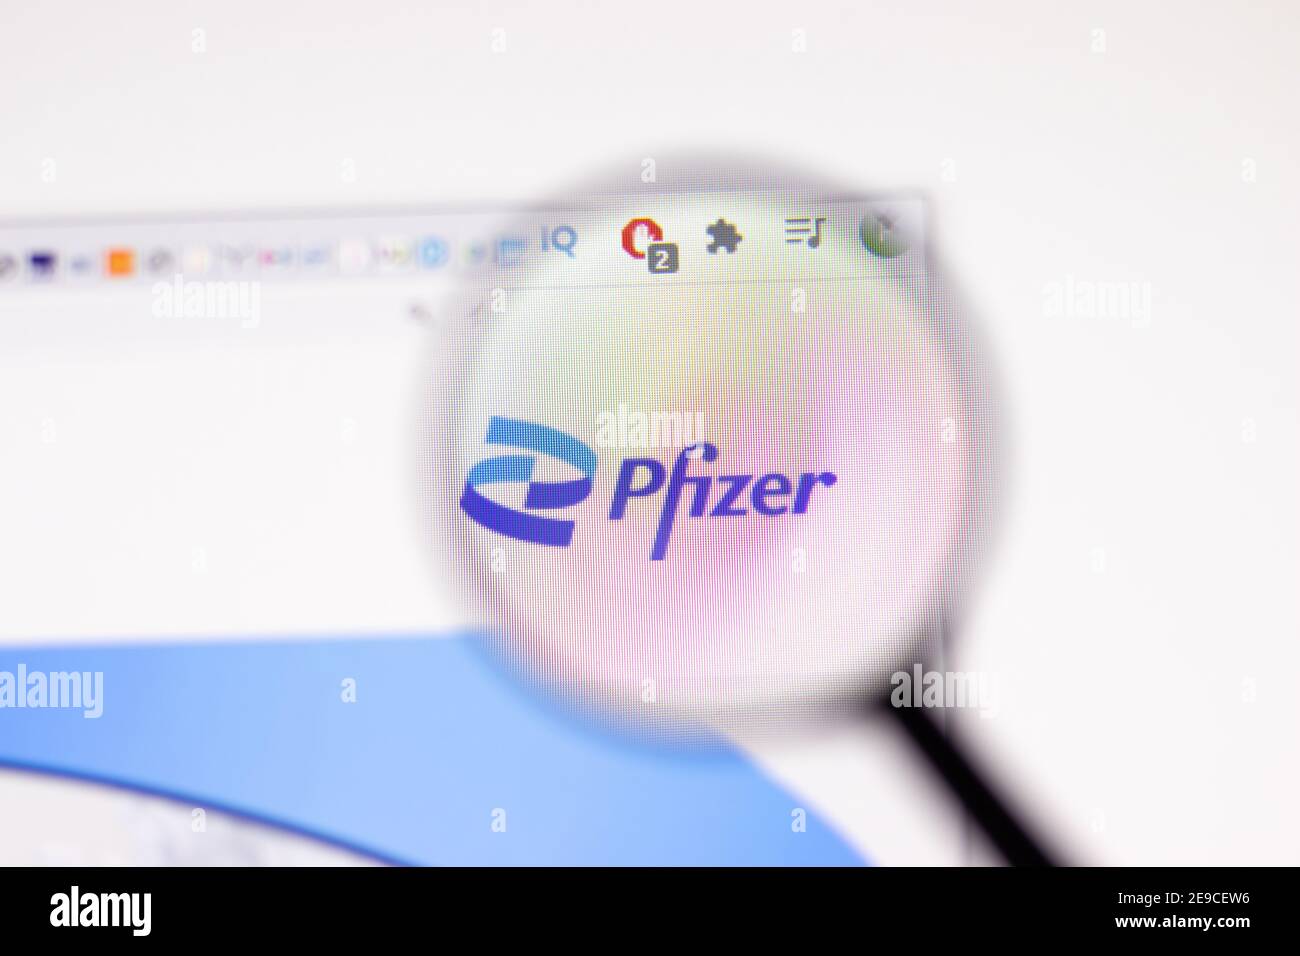 Los Angeles, EE.UU. - 1 de febrero de 2021: Página web de Pfizer. Pfizer.com logo en pantalla, editorial ilustrativa Foto de stock